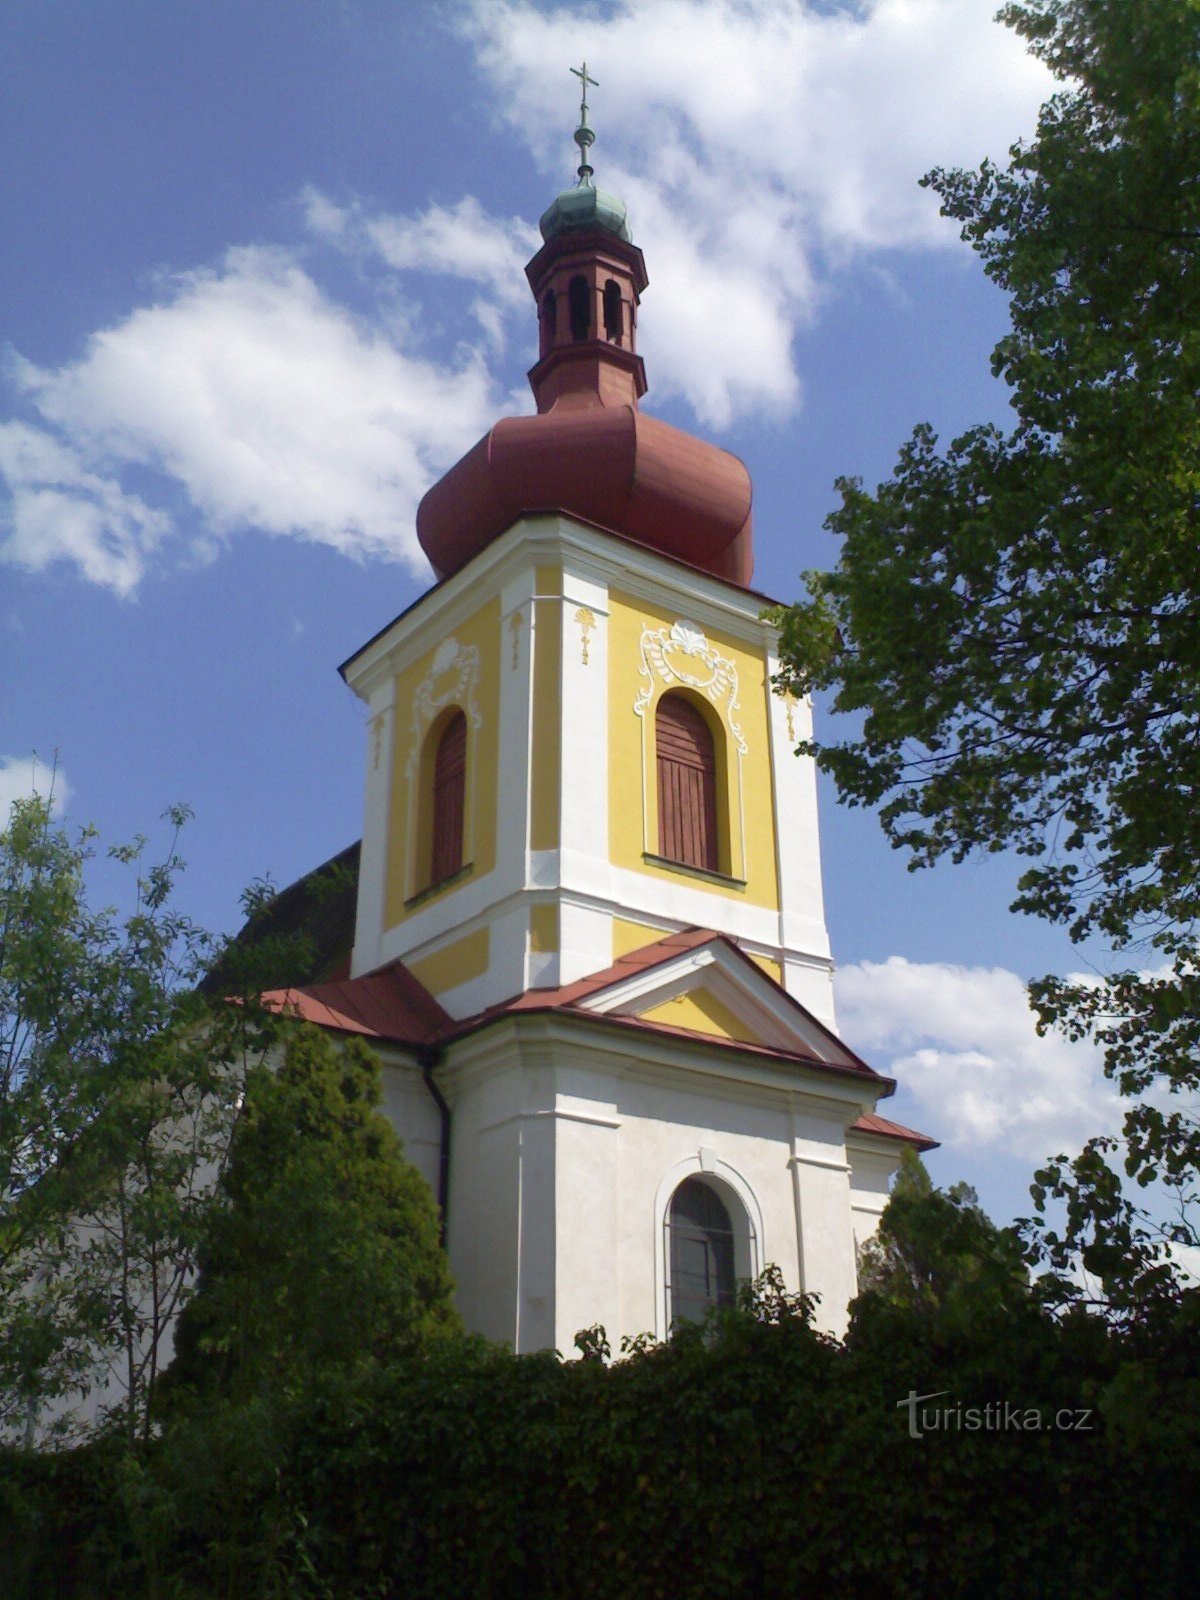 Křivice - crkva sv. Lovre